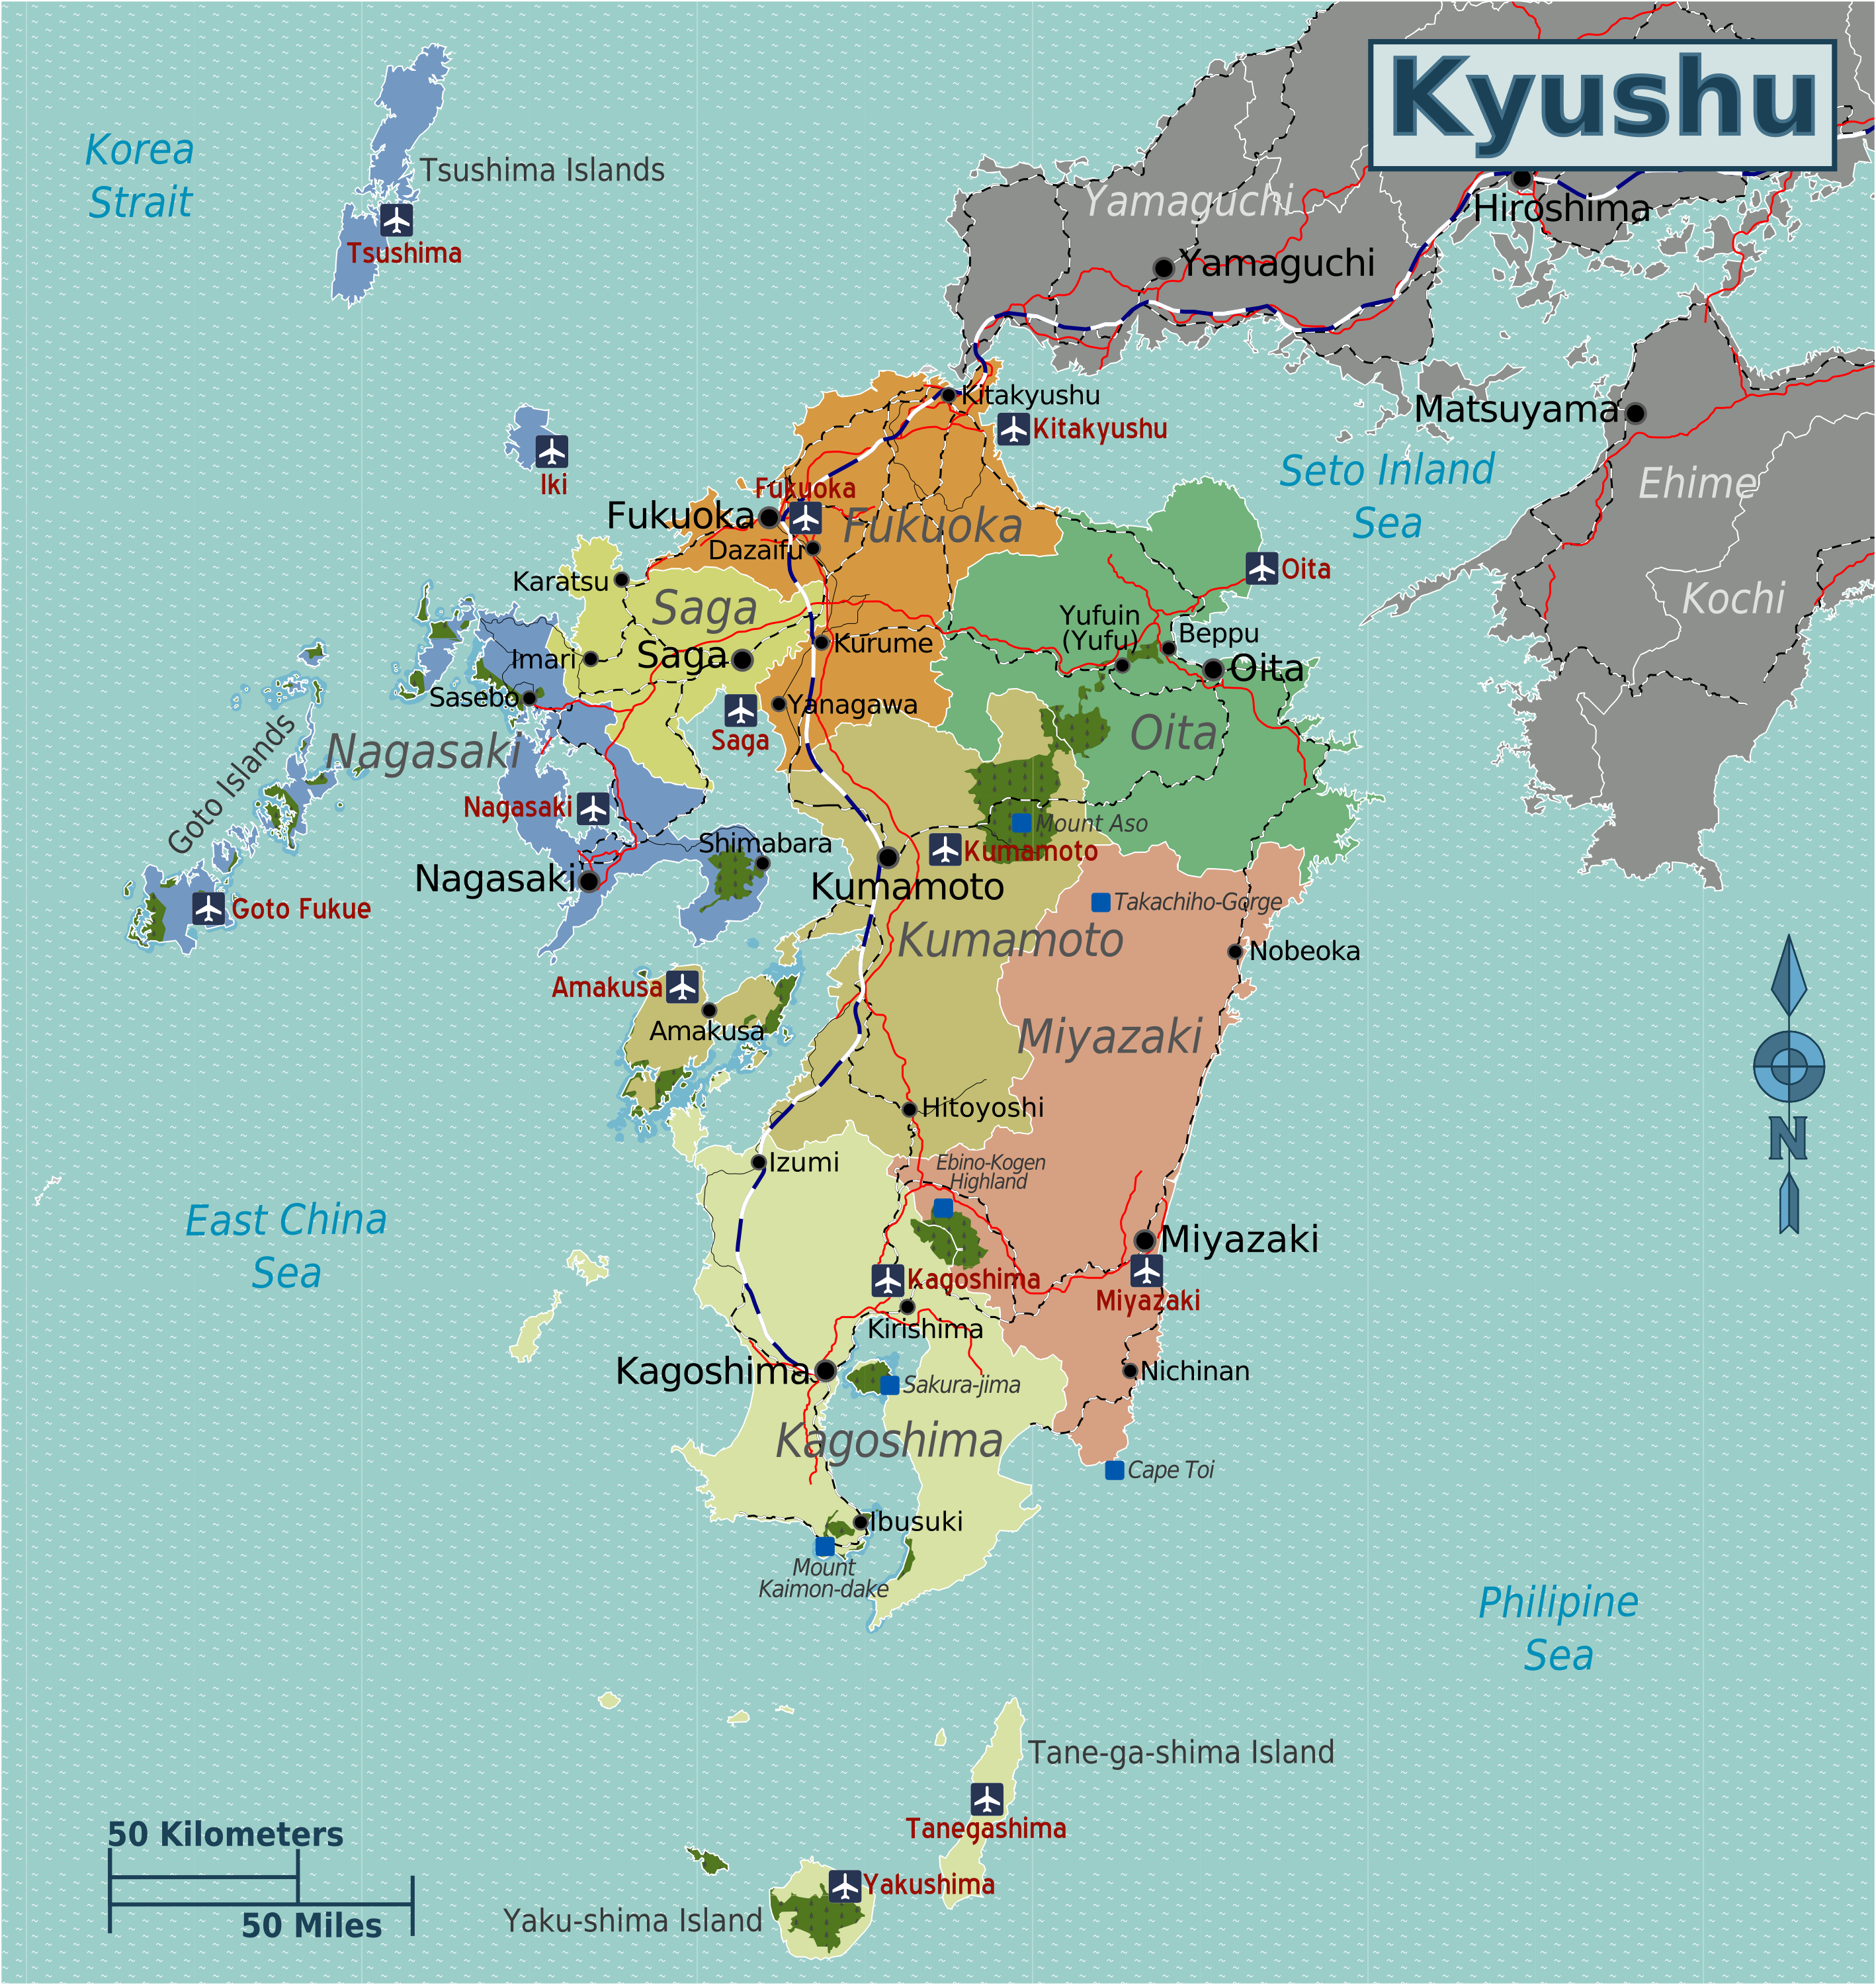 japan_kyushu_map